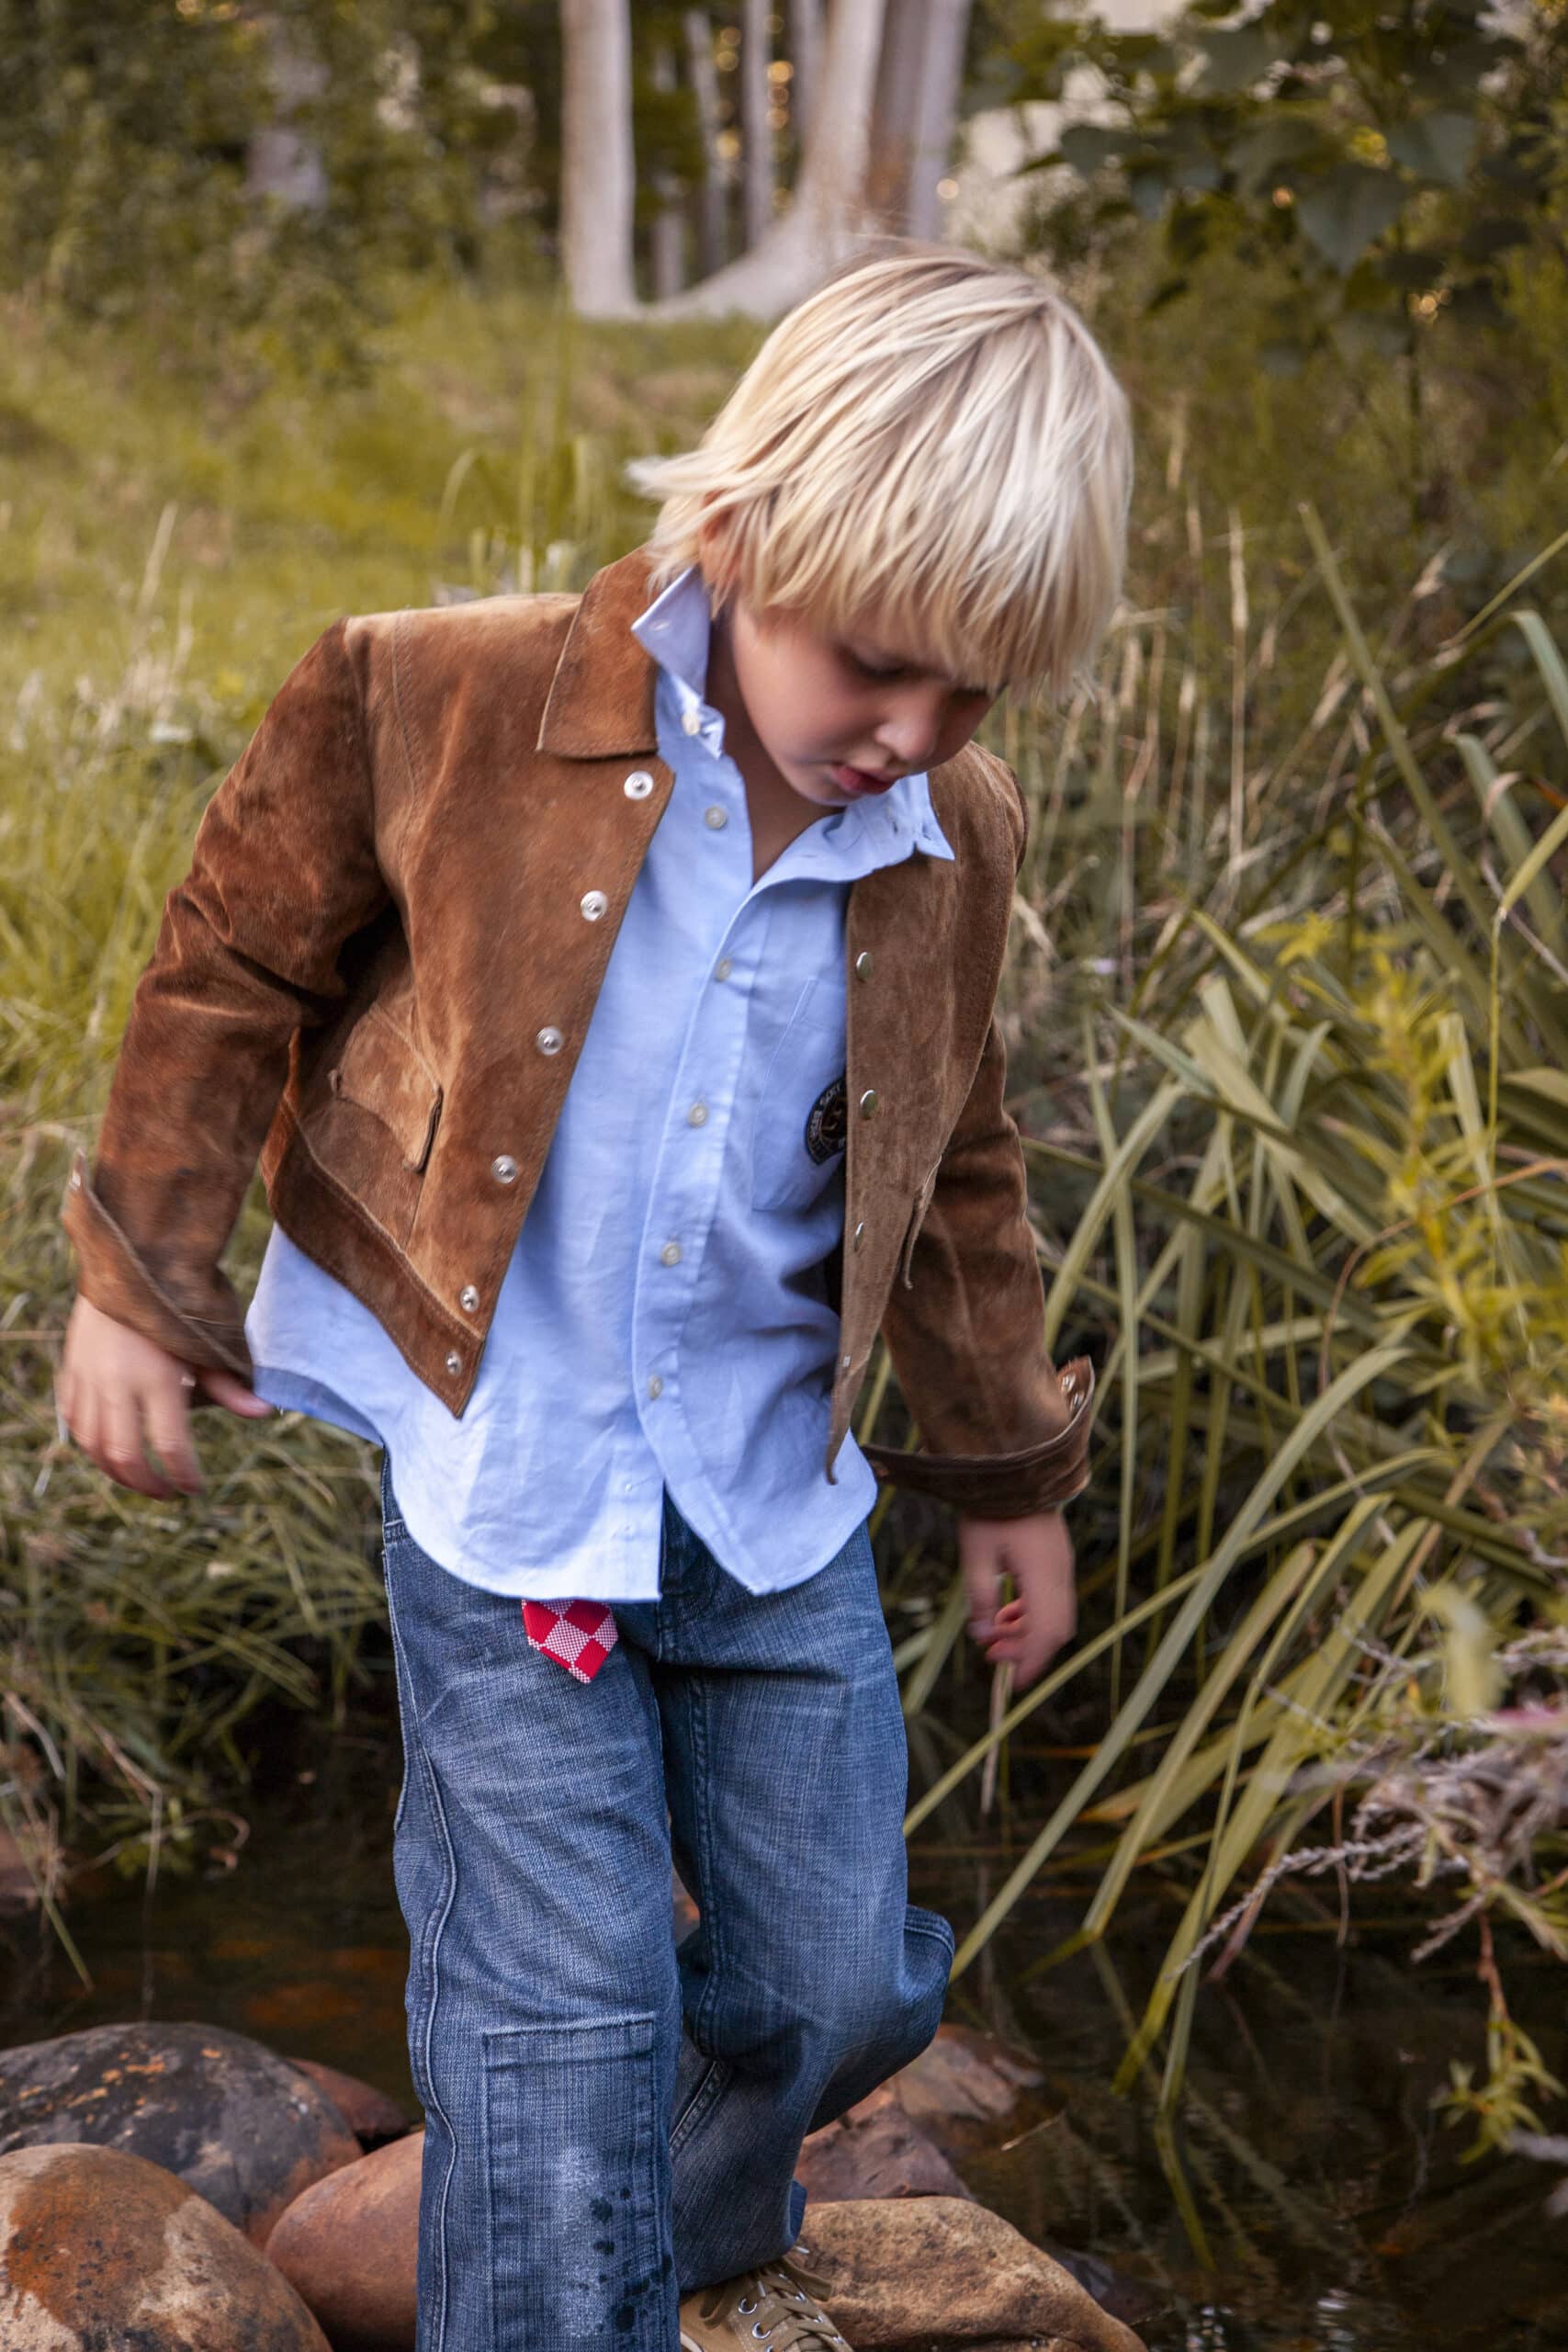 Ein kleiner Junge mit blondem Haar, einer braunen Wildlederjacke, einem blauen Hemd und Jeans, tritt vorsichtig auf Steine neben einem Bach, der von Gras und Schilf umgeben ist. © Fotografie Tomas Rodriguez